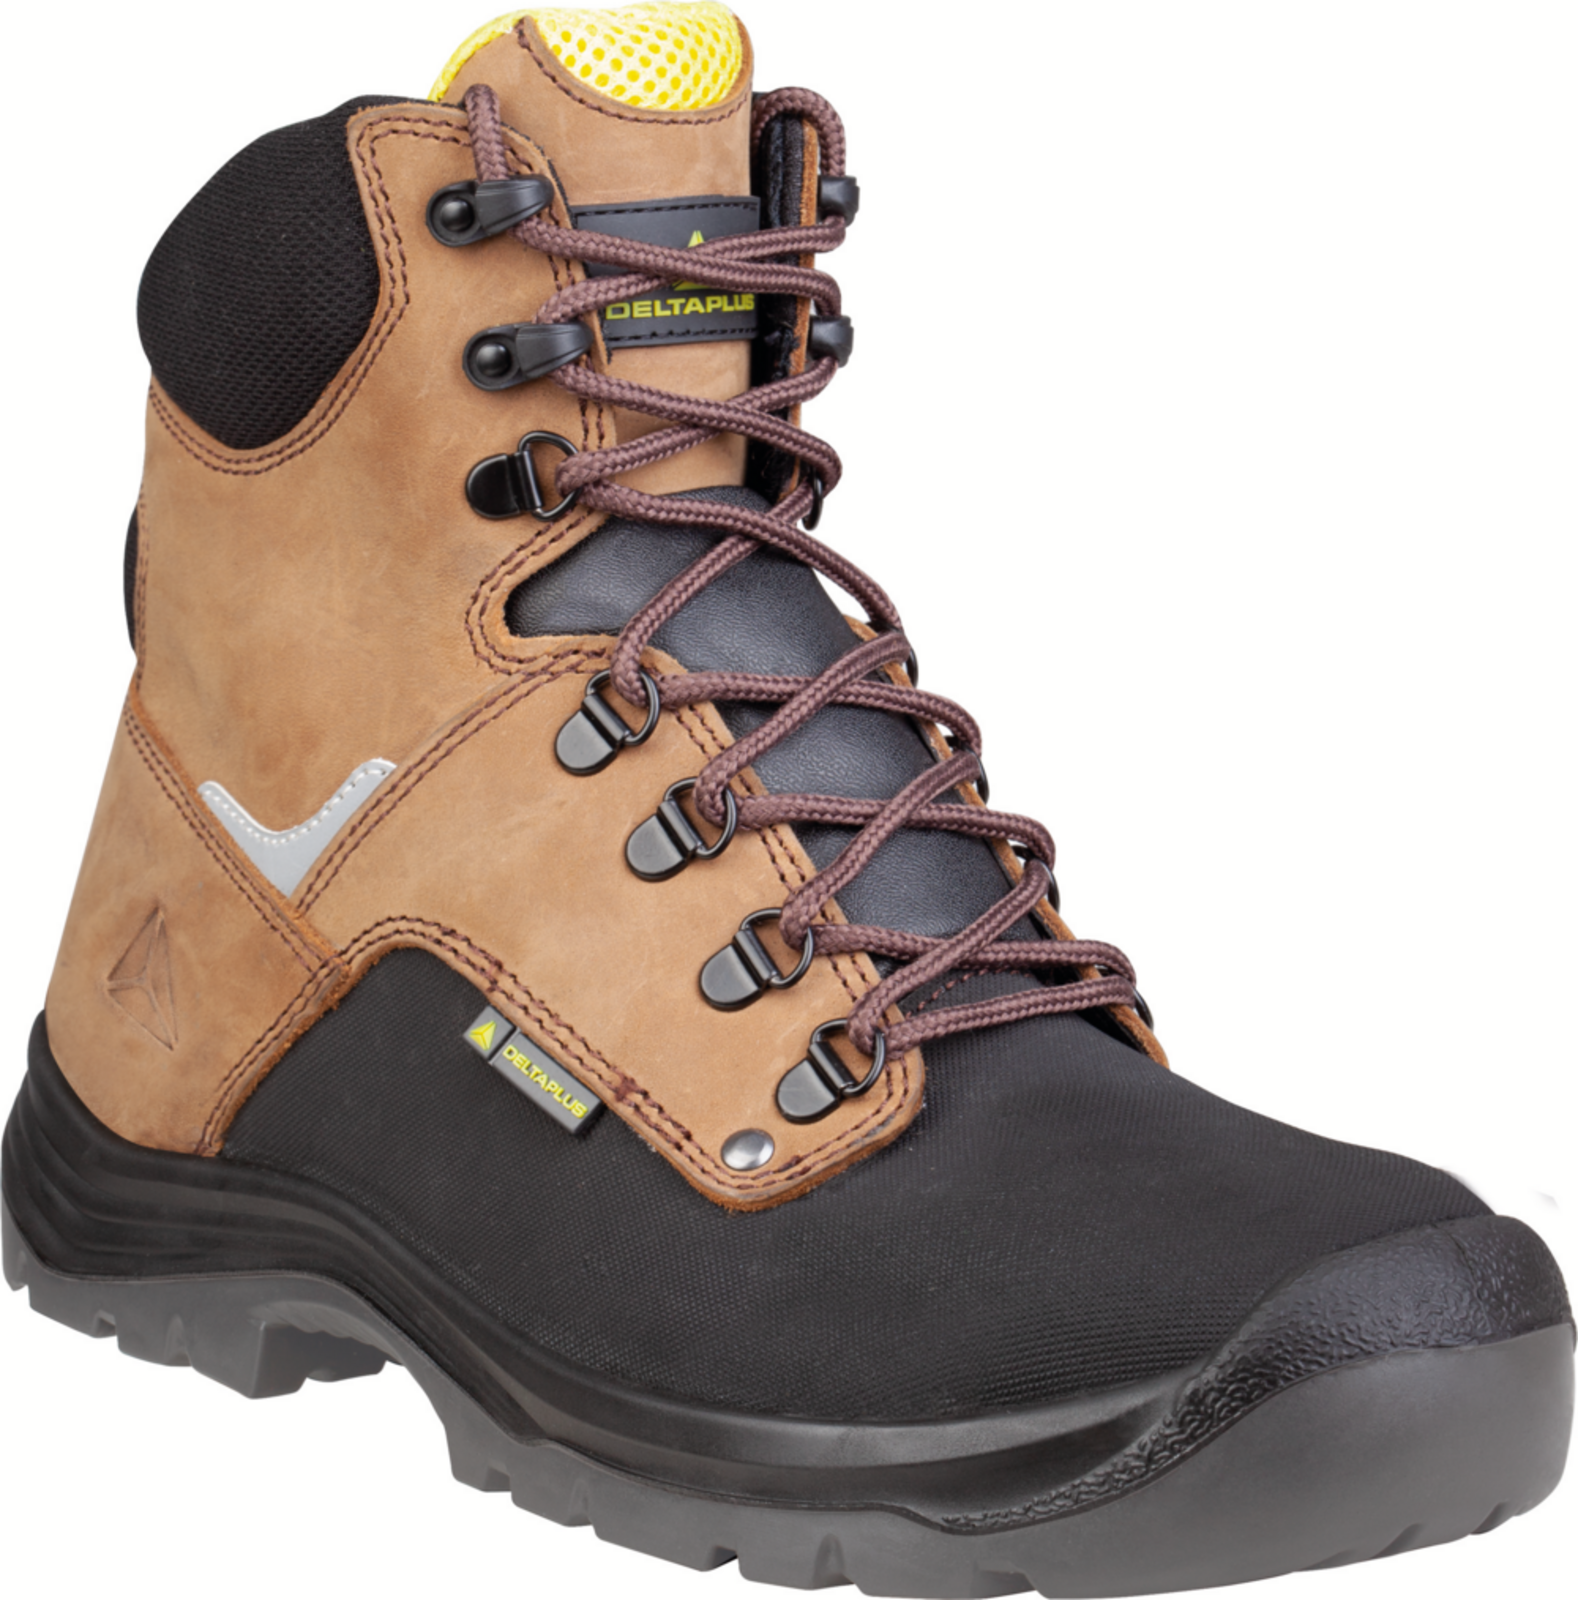 Vysoká bezpečnostná obuv Delta Plus Atacama S3 - veľkosť: 40, farba: hnedá/čierna